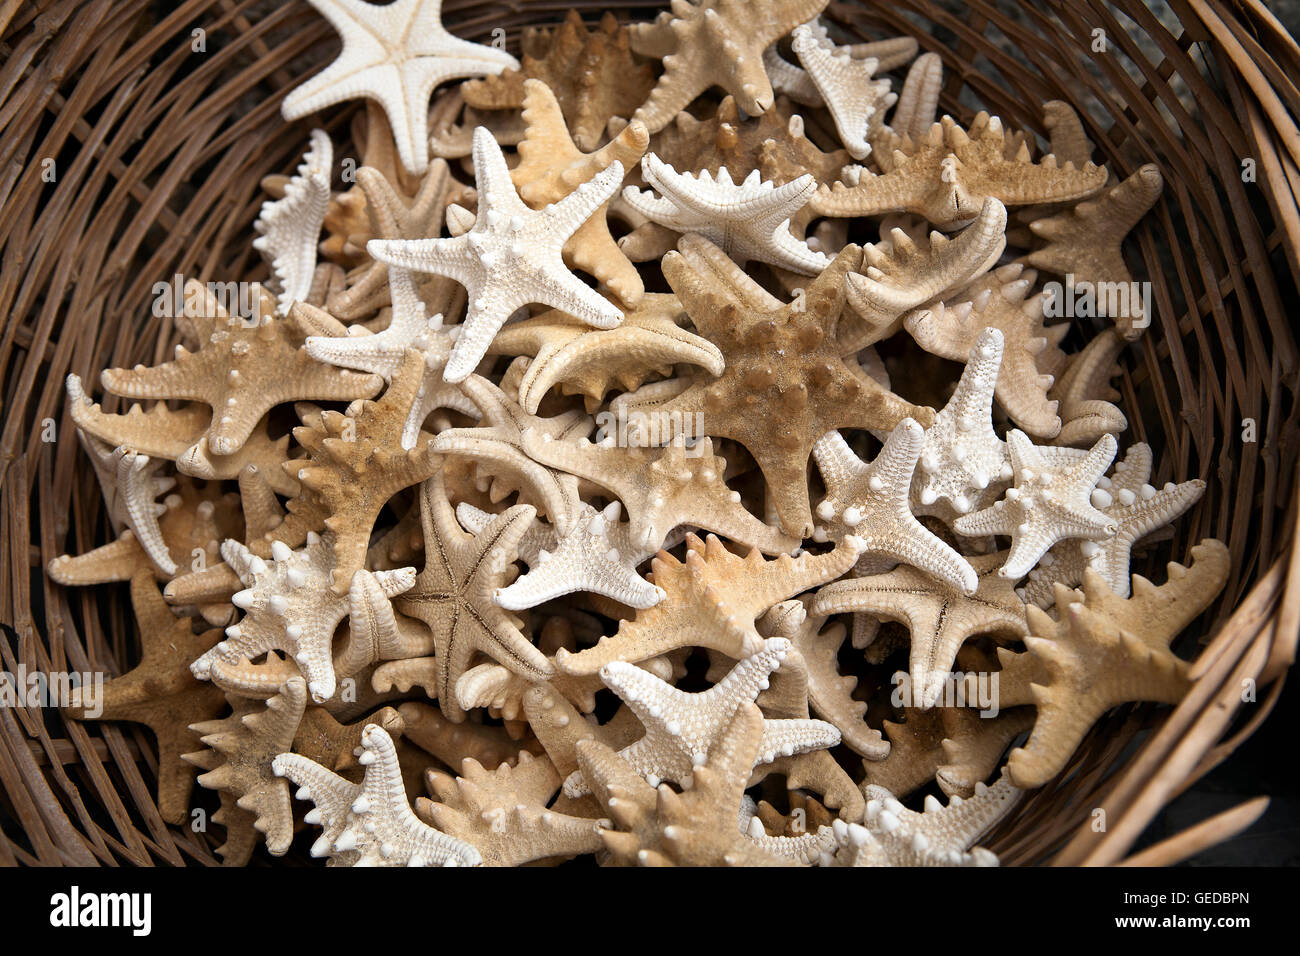 Basket full of starfish Stock Photo